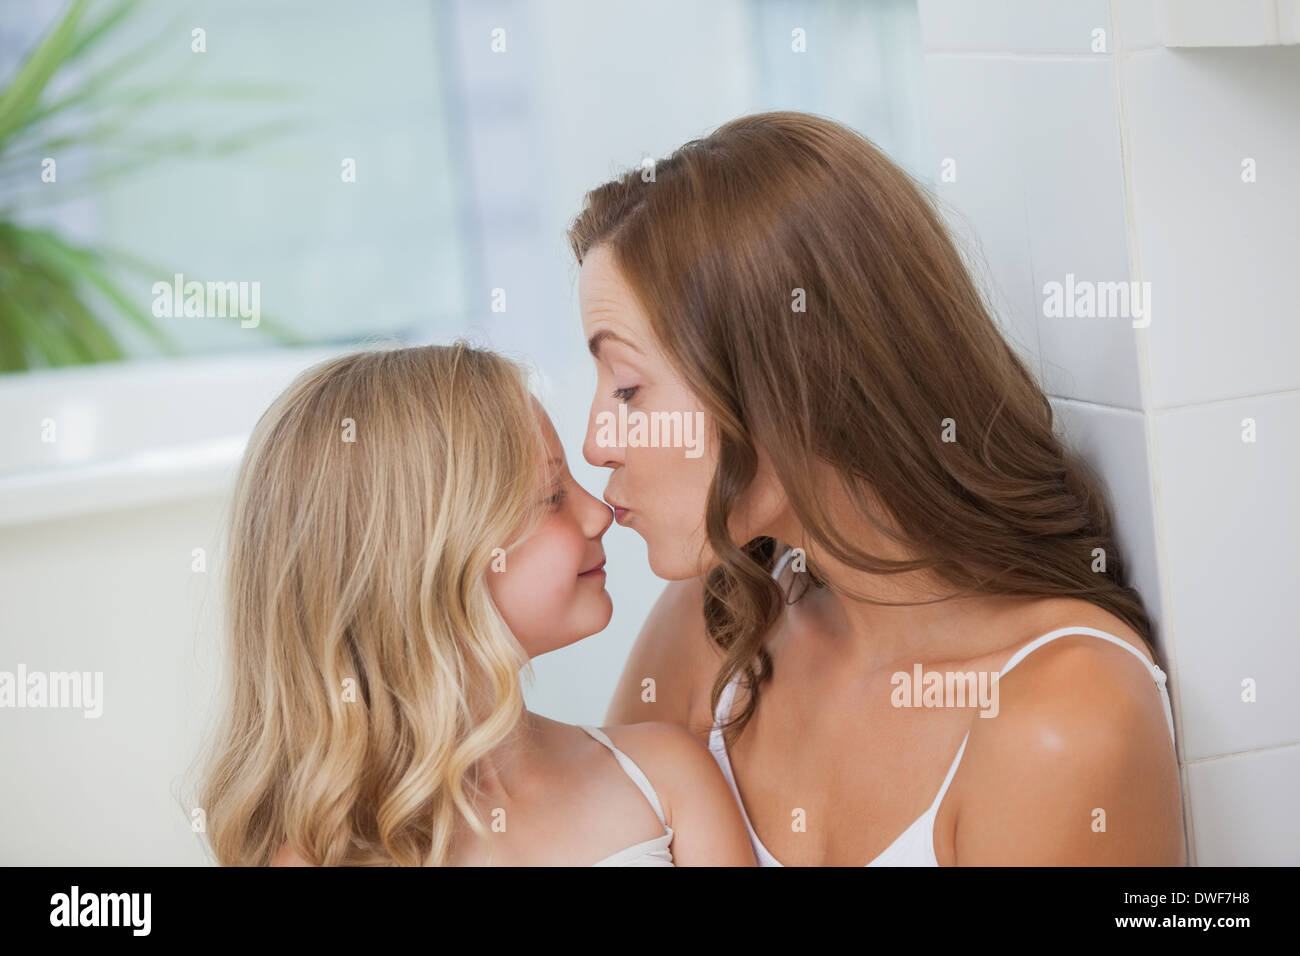 Лесбиянка мама девочка. Мать целует дочь. Мама с дочкой поцелуй. Малыши лесбияночки. Мама и дочь поцелуй с языком.